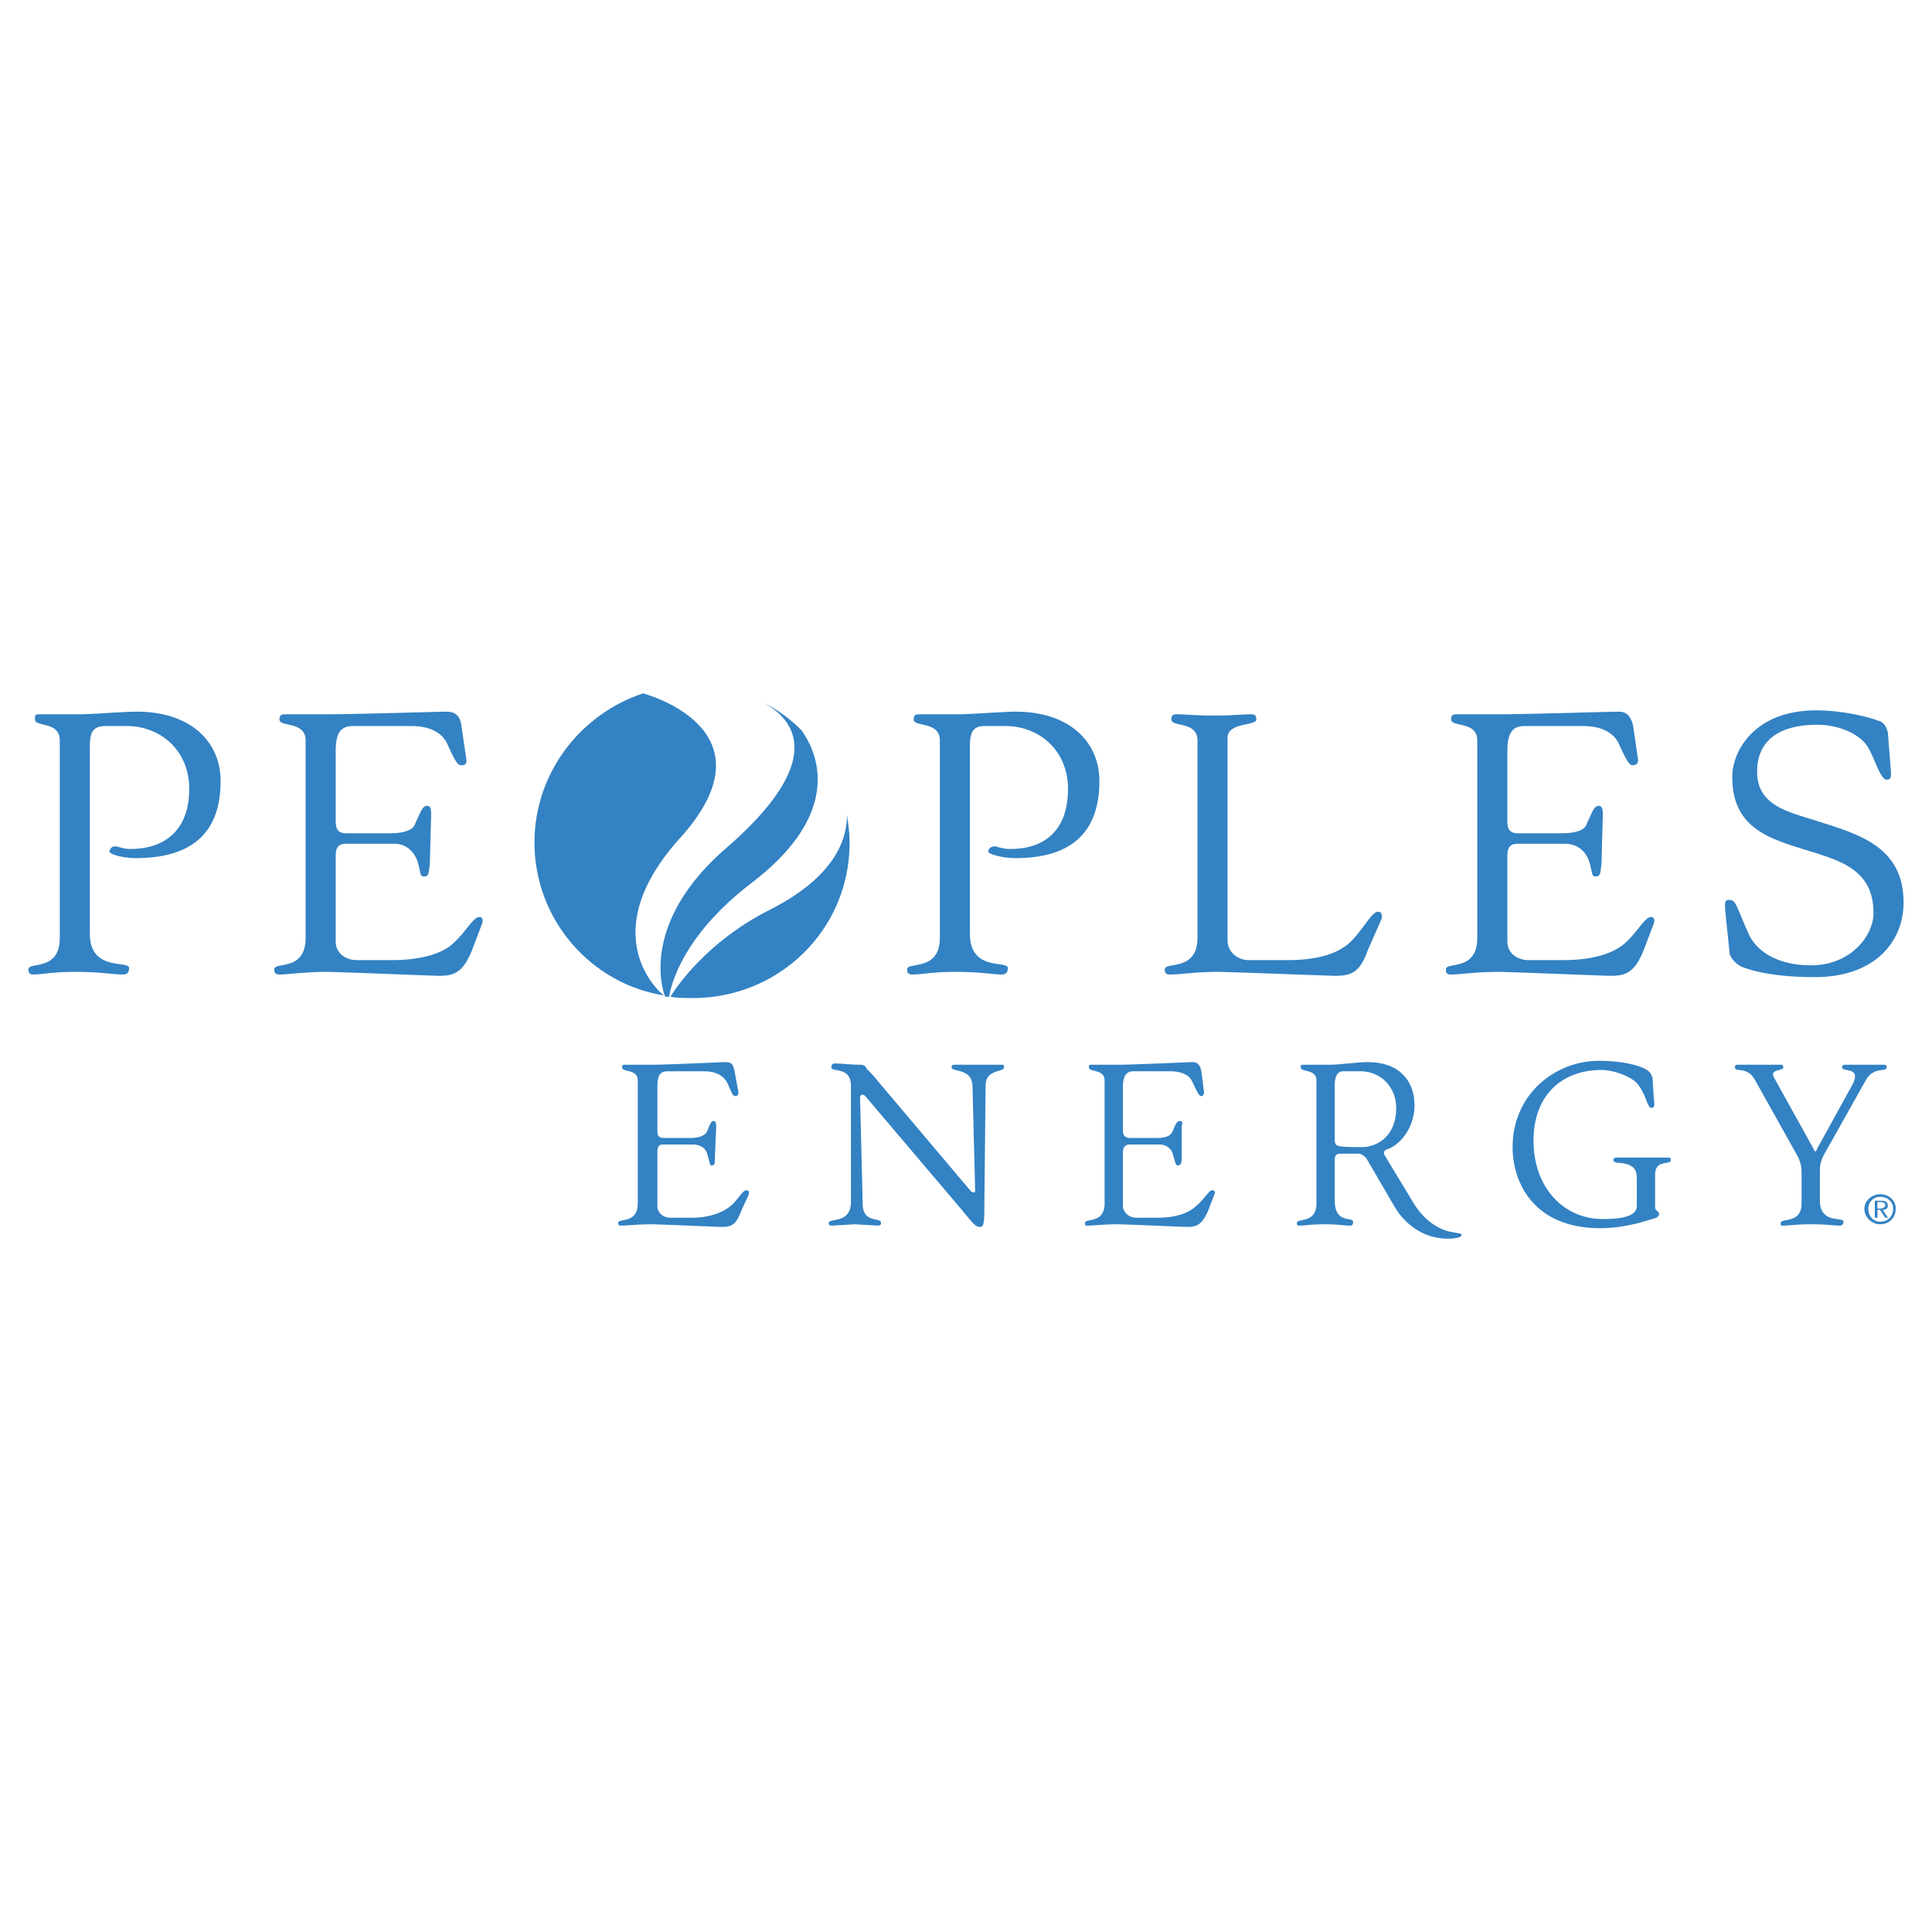 Peoples Energy